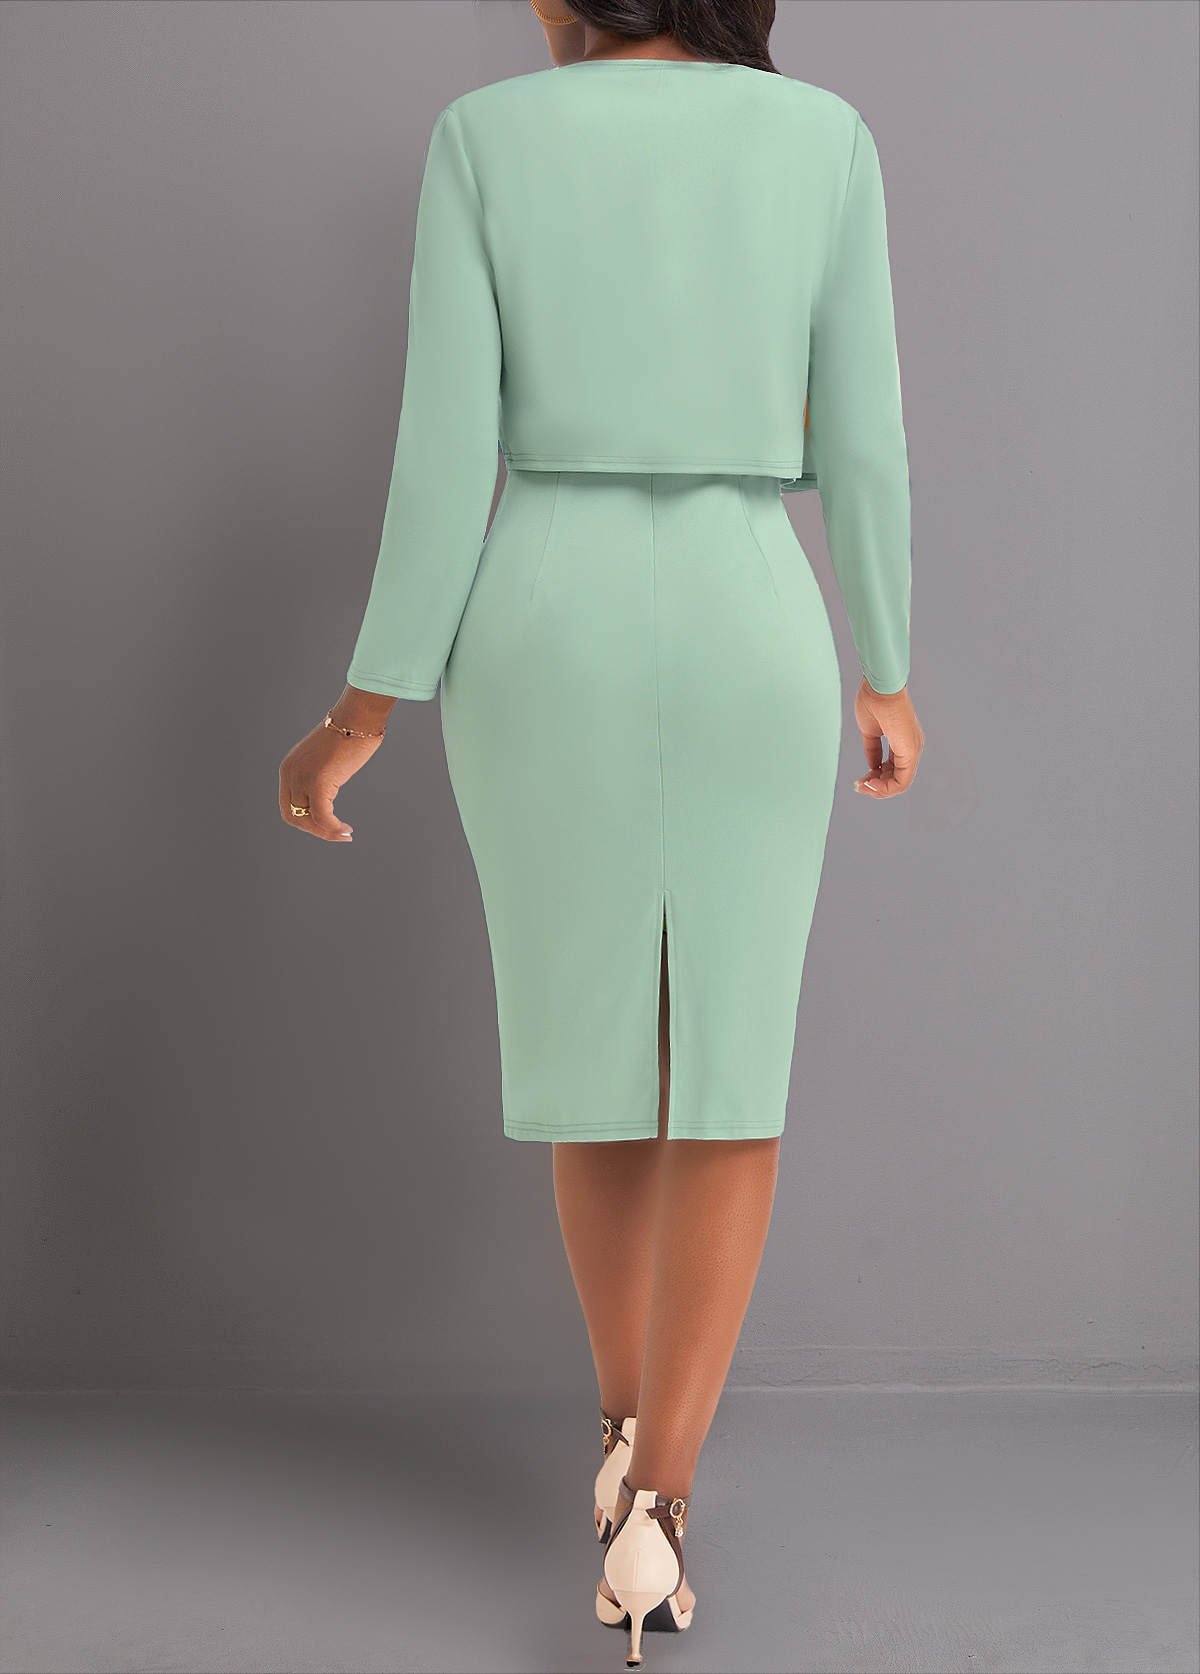 Plus Size Sage Green Two Piece Geometric Print Dress